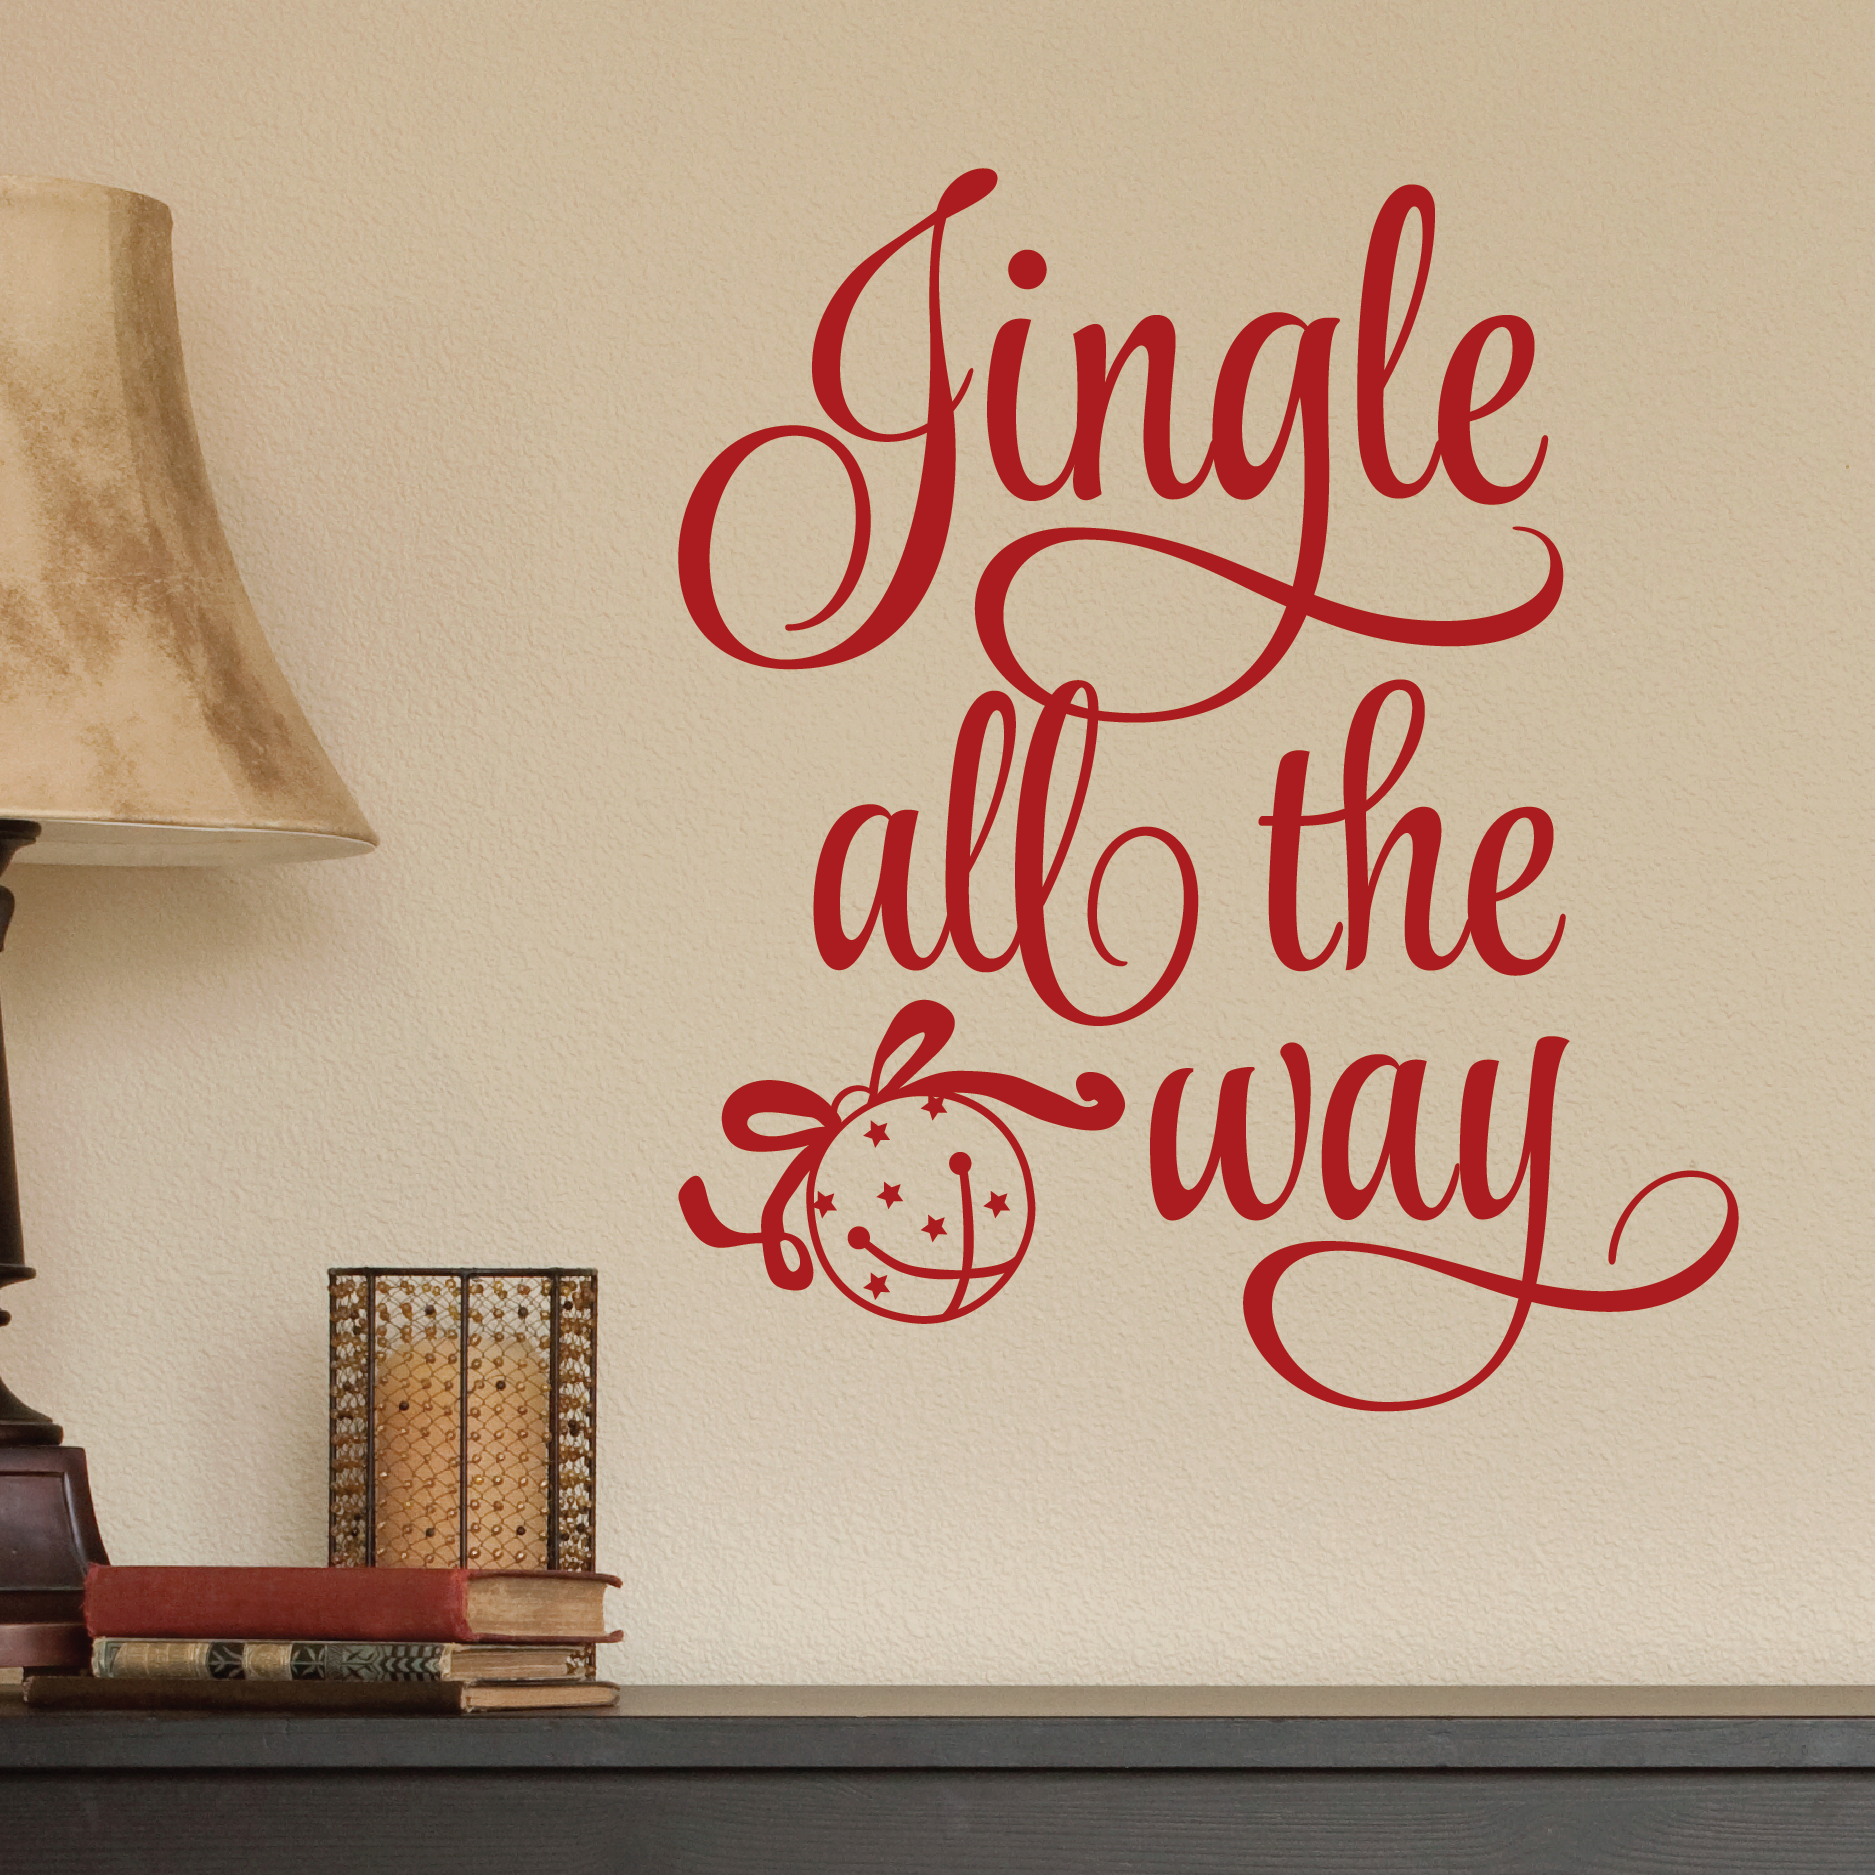 Walls ways. Jingle Bells надпись. Джингл белс обои. Красивая надпись джингл Бэл. Джингл белс красивым шрифтом.